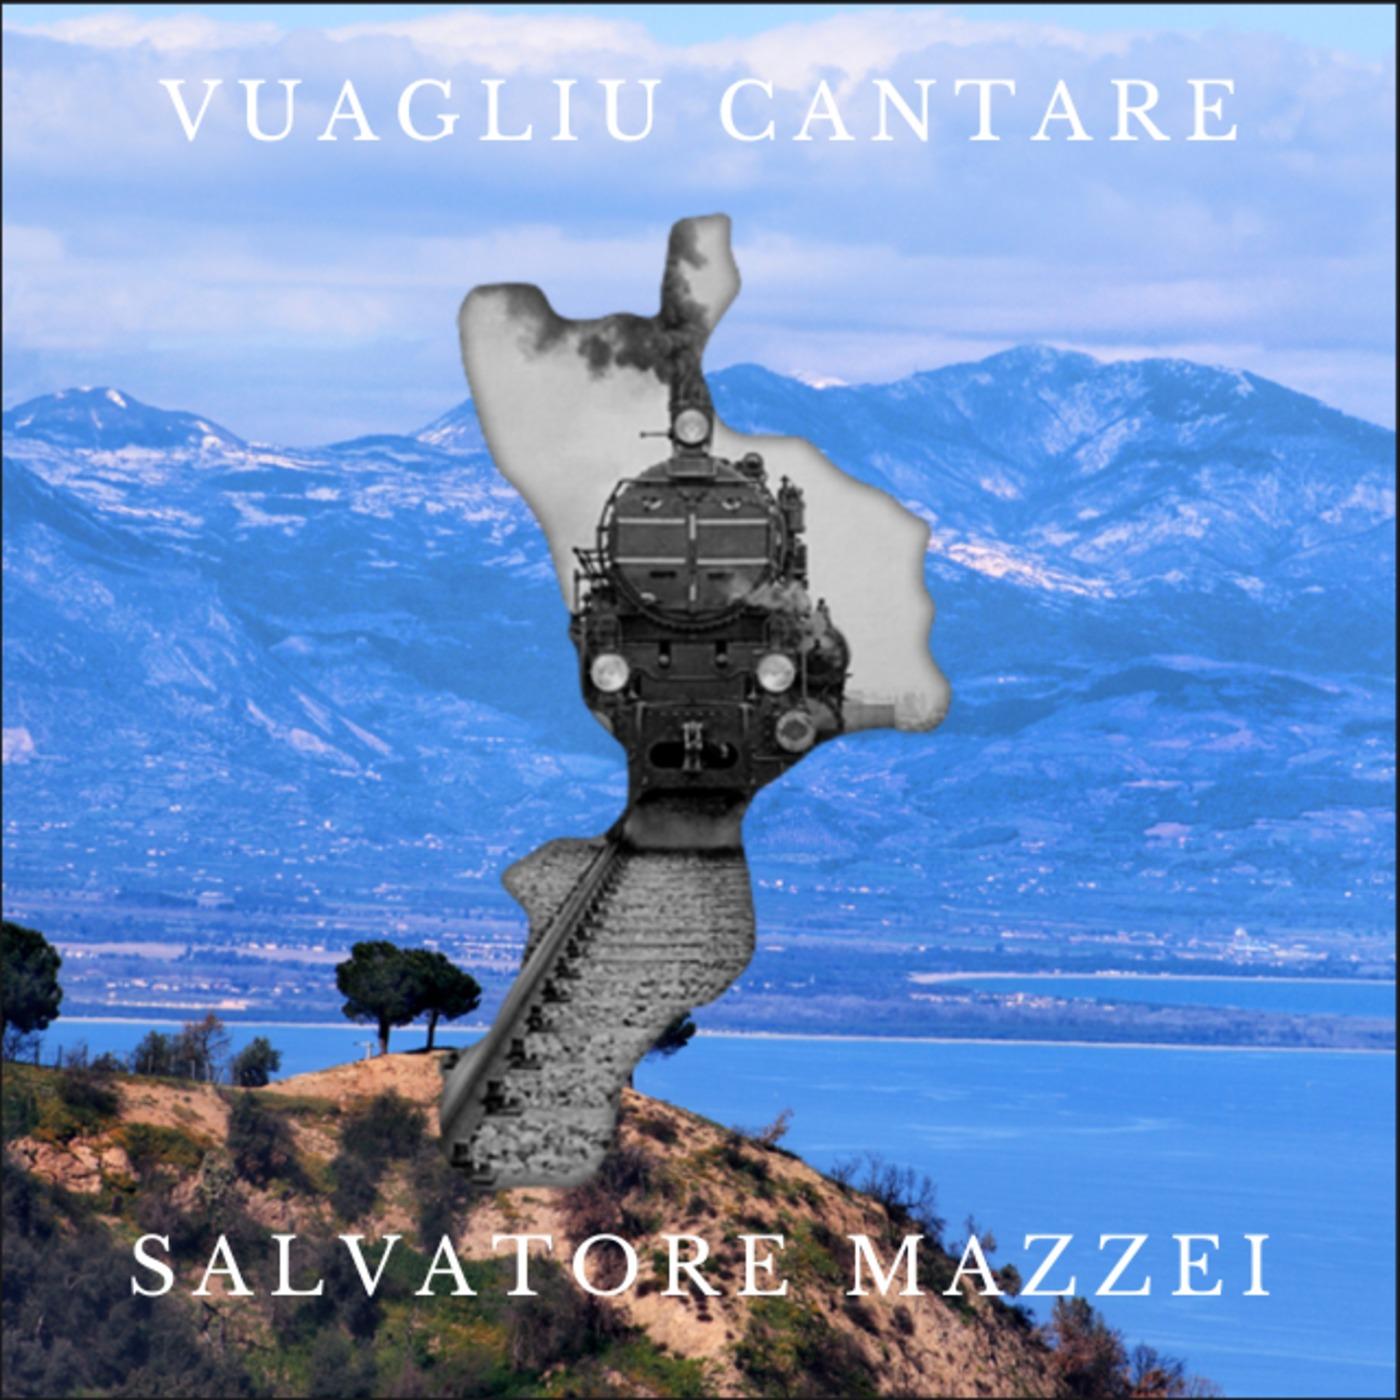 Vuagliu cantare - Salvatore Mazzei